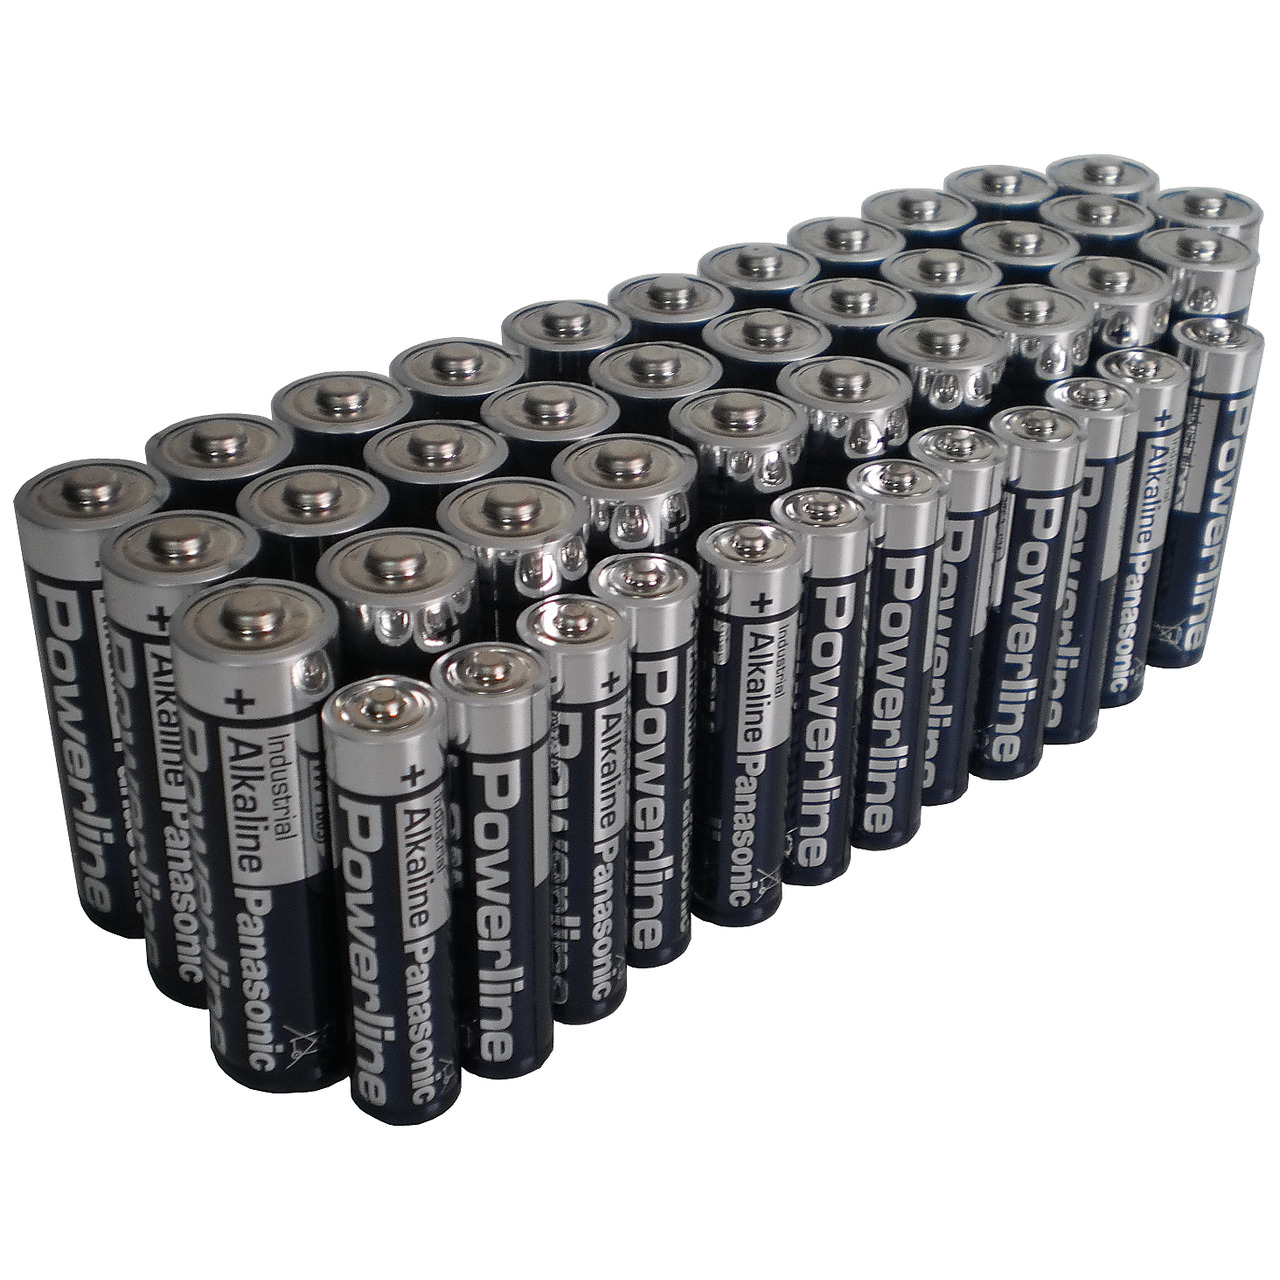 Panasonic Powerline Alkaline Batterien Spar-Pack mit 32 Mignon und 12 Micro-Batterien